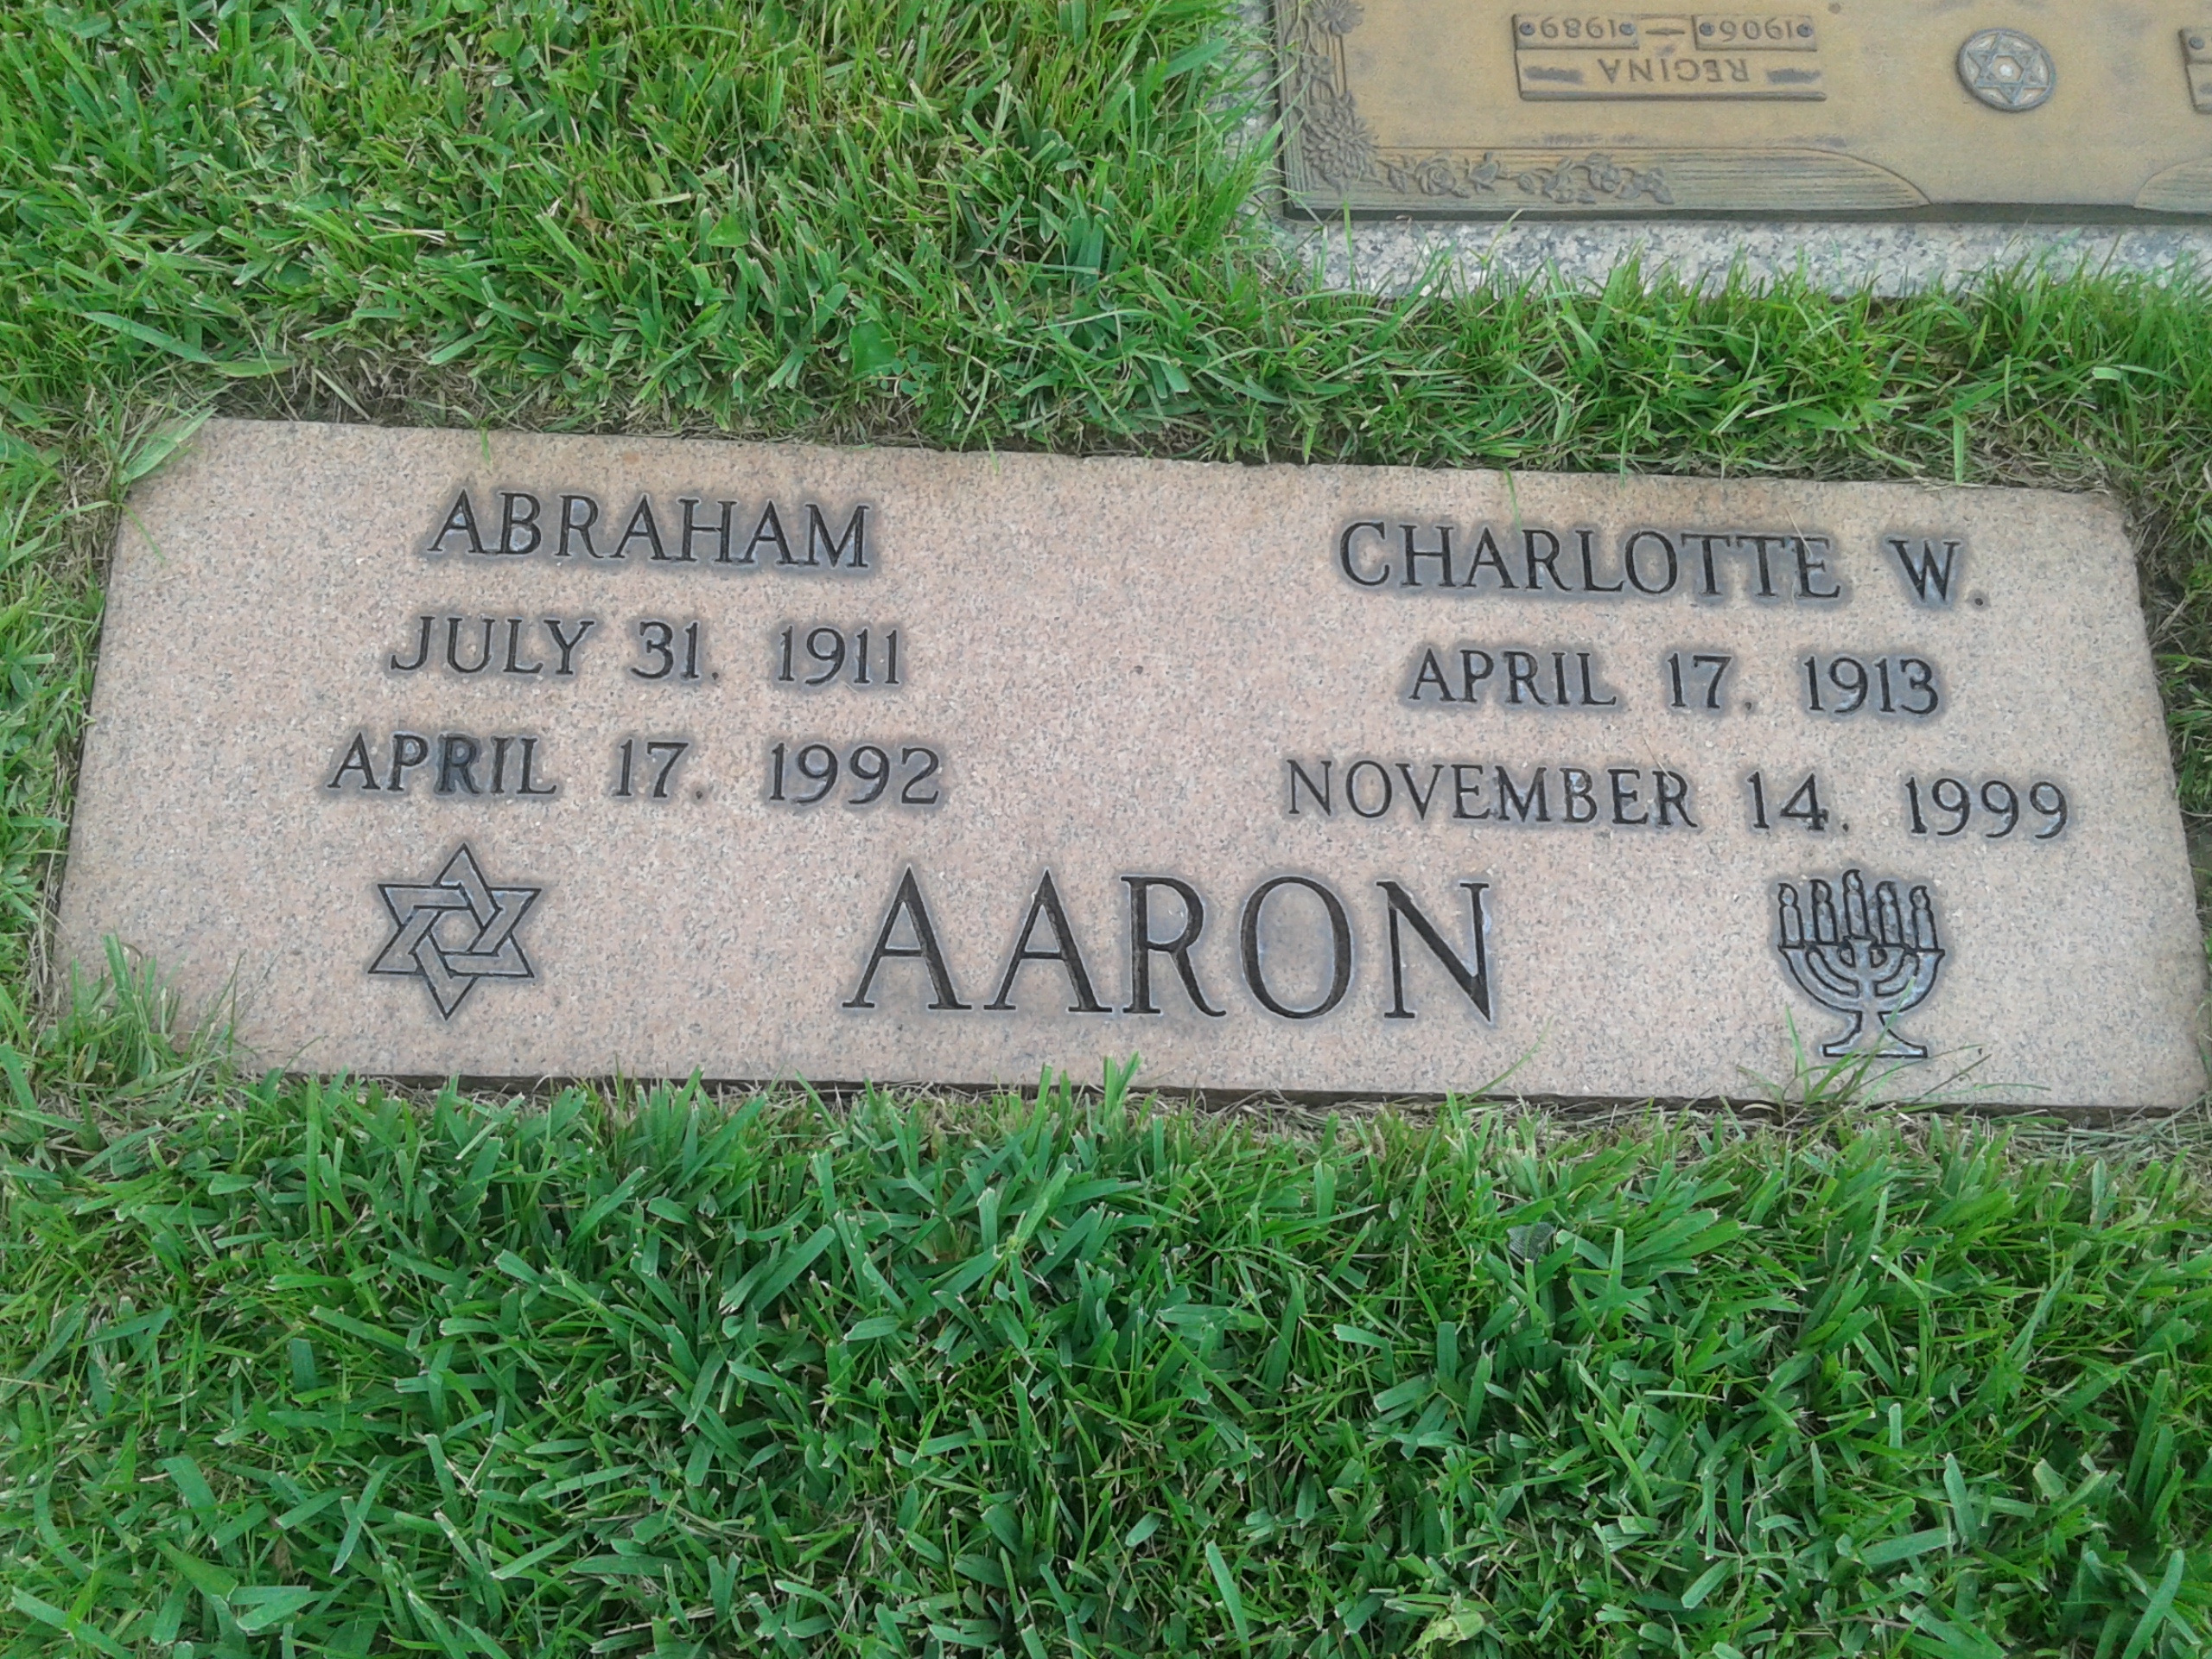 Abraham Aaron